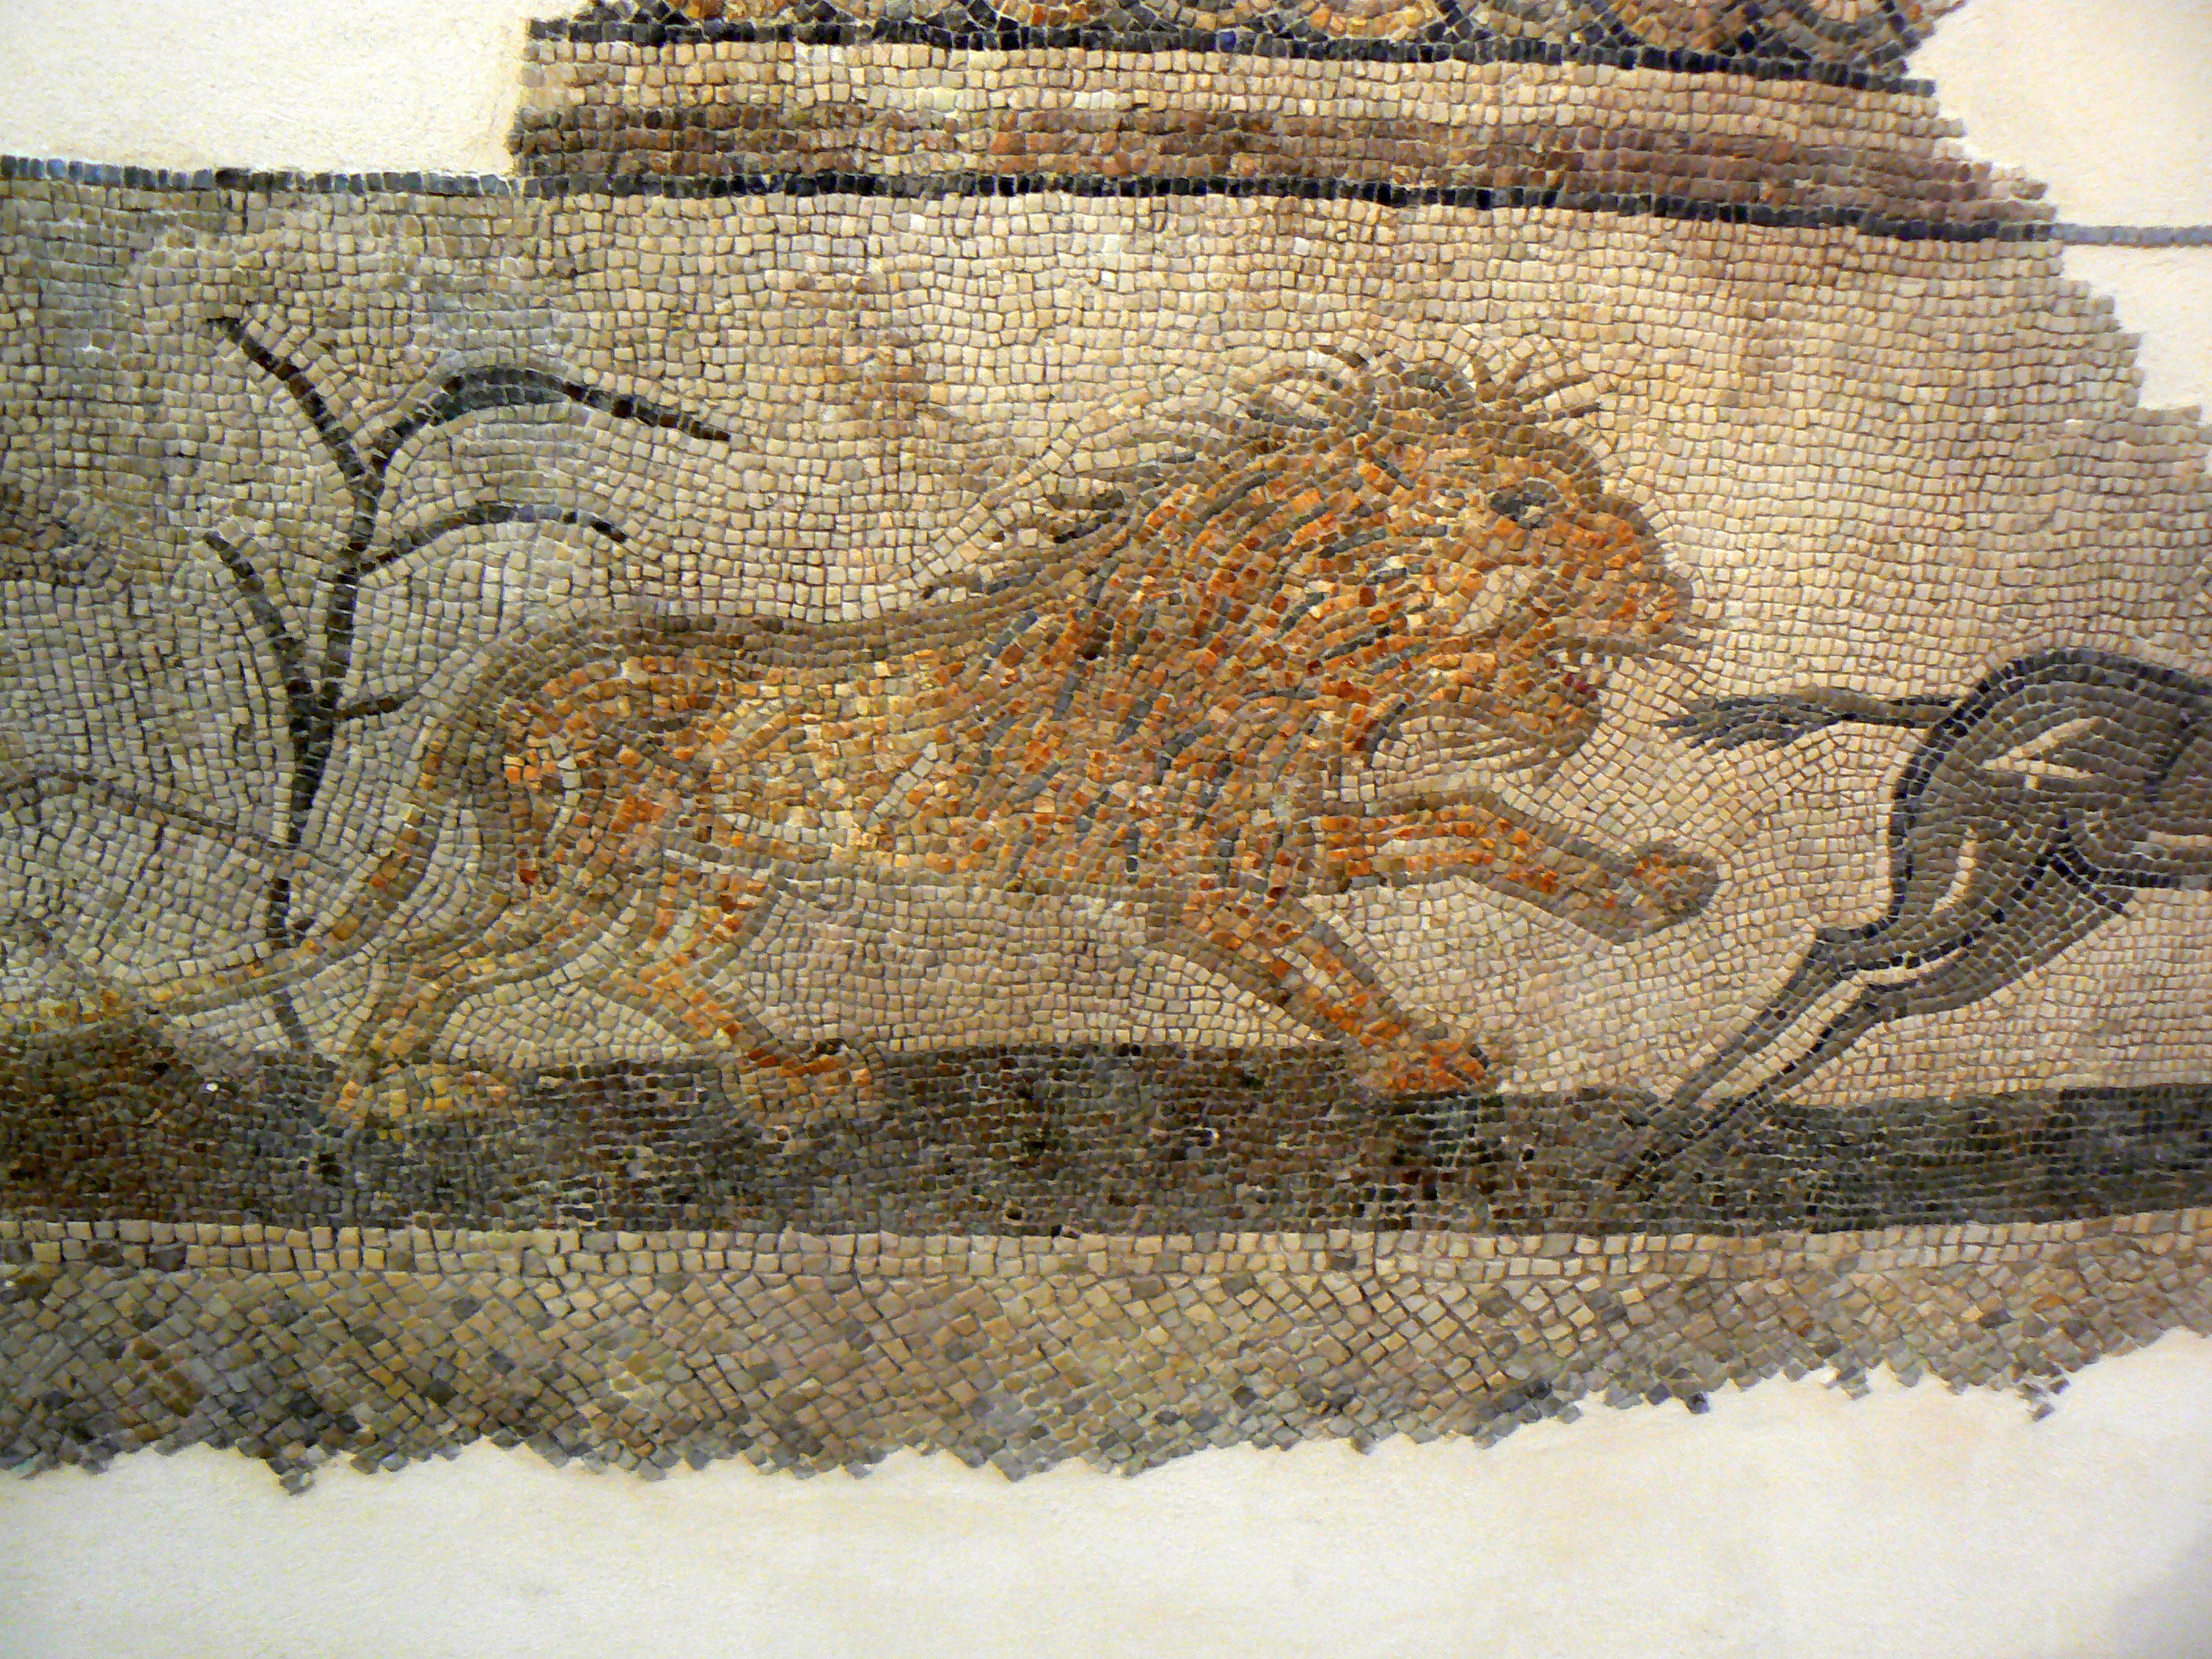 photo: https://upload.wikimedia.org/wikipedia/commons/e/e3/Mosaico_domus_chirurgo_1.jpg